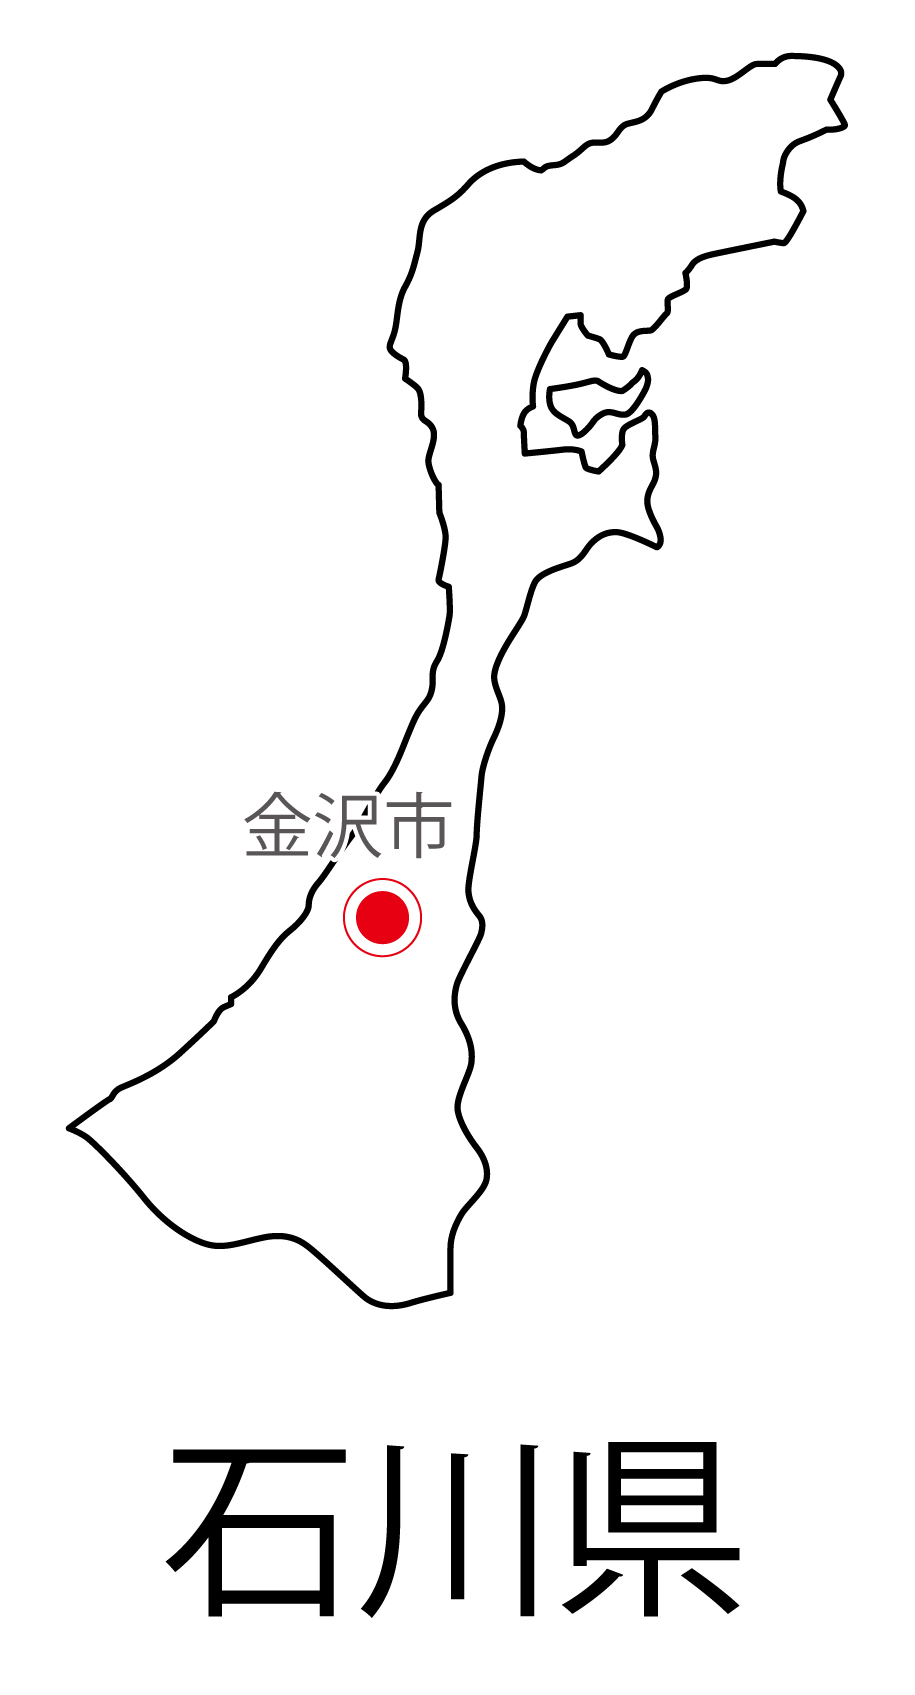 石川県の地図イラスト フリー素材 を無料ダウンロード